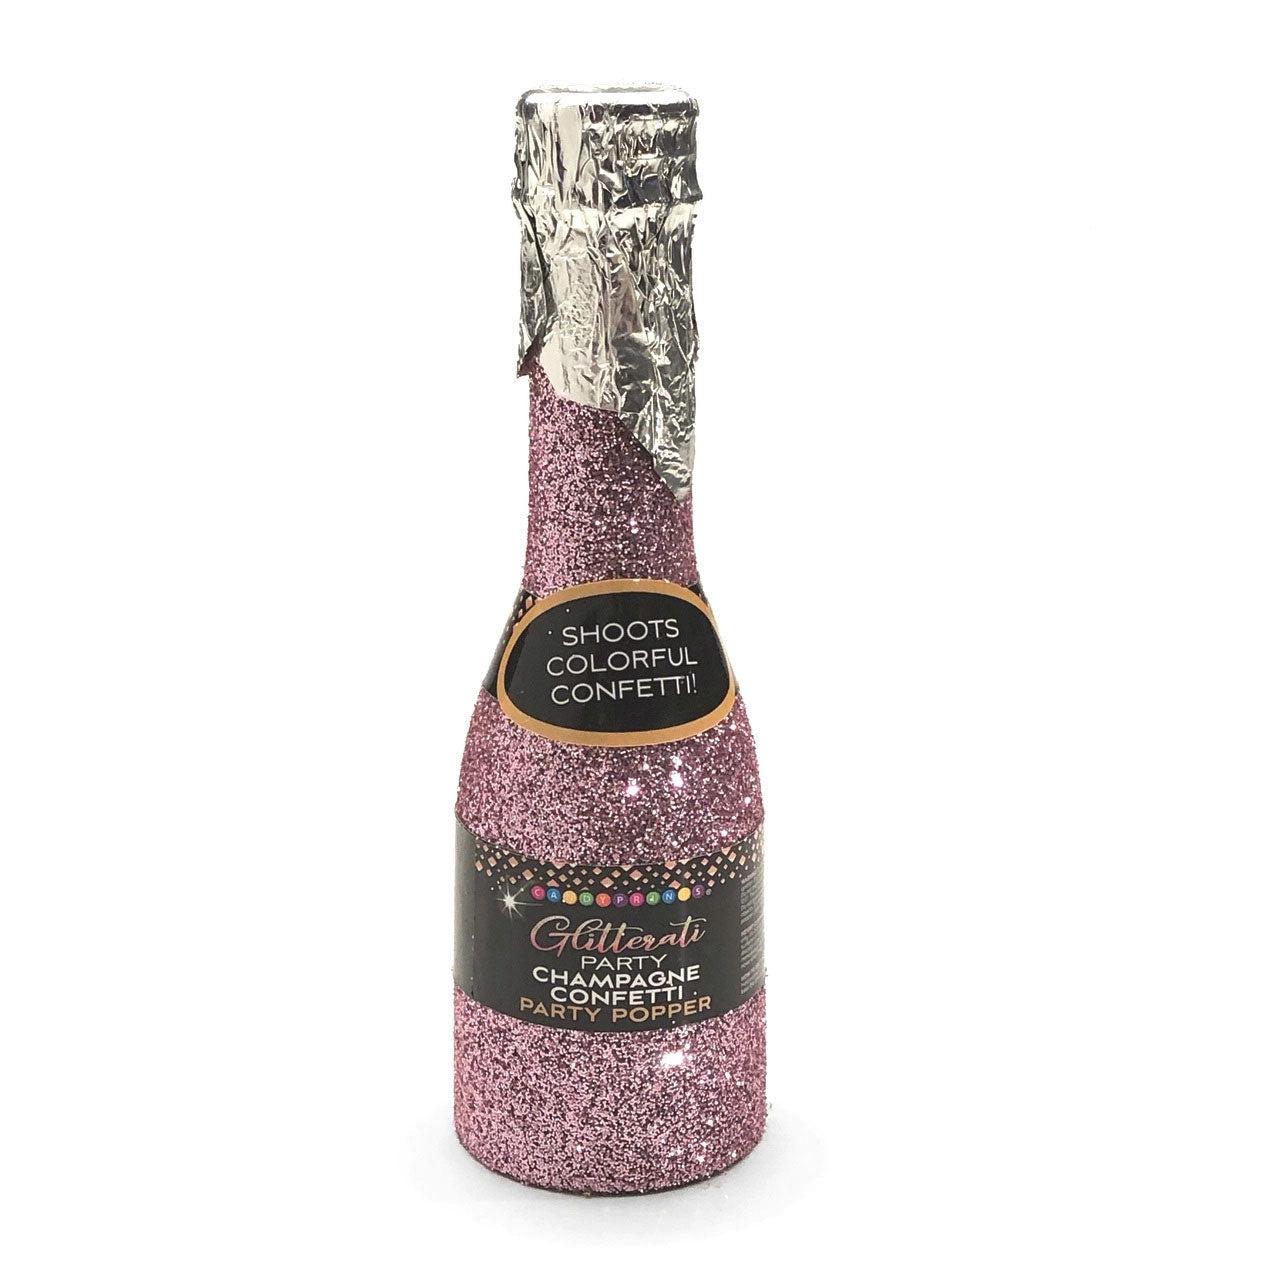 Glitterati Champagne Confetti Poppers